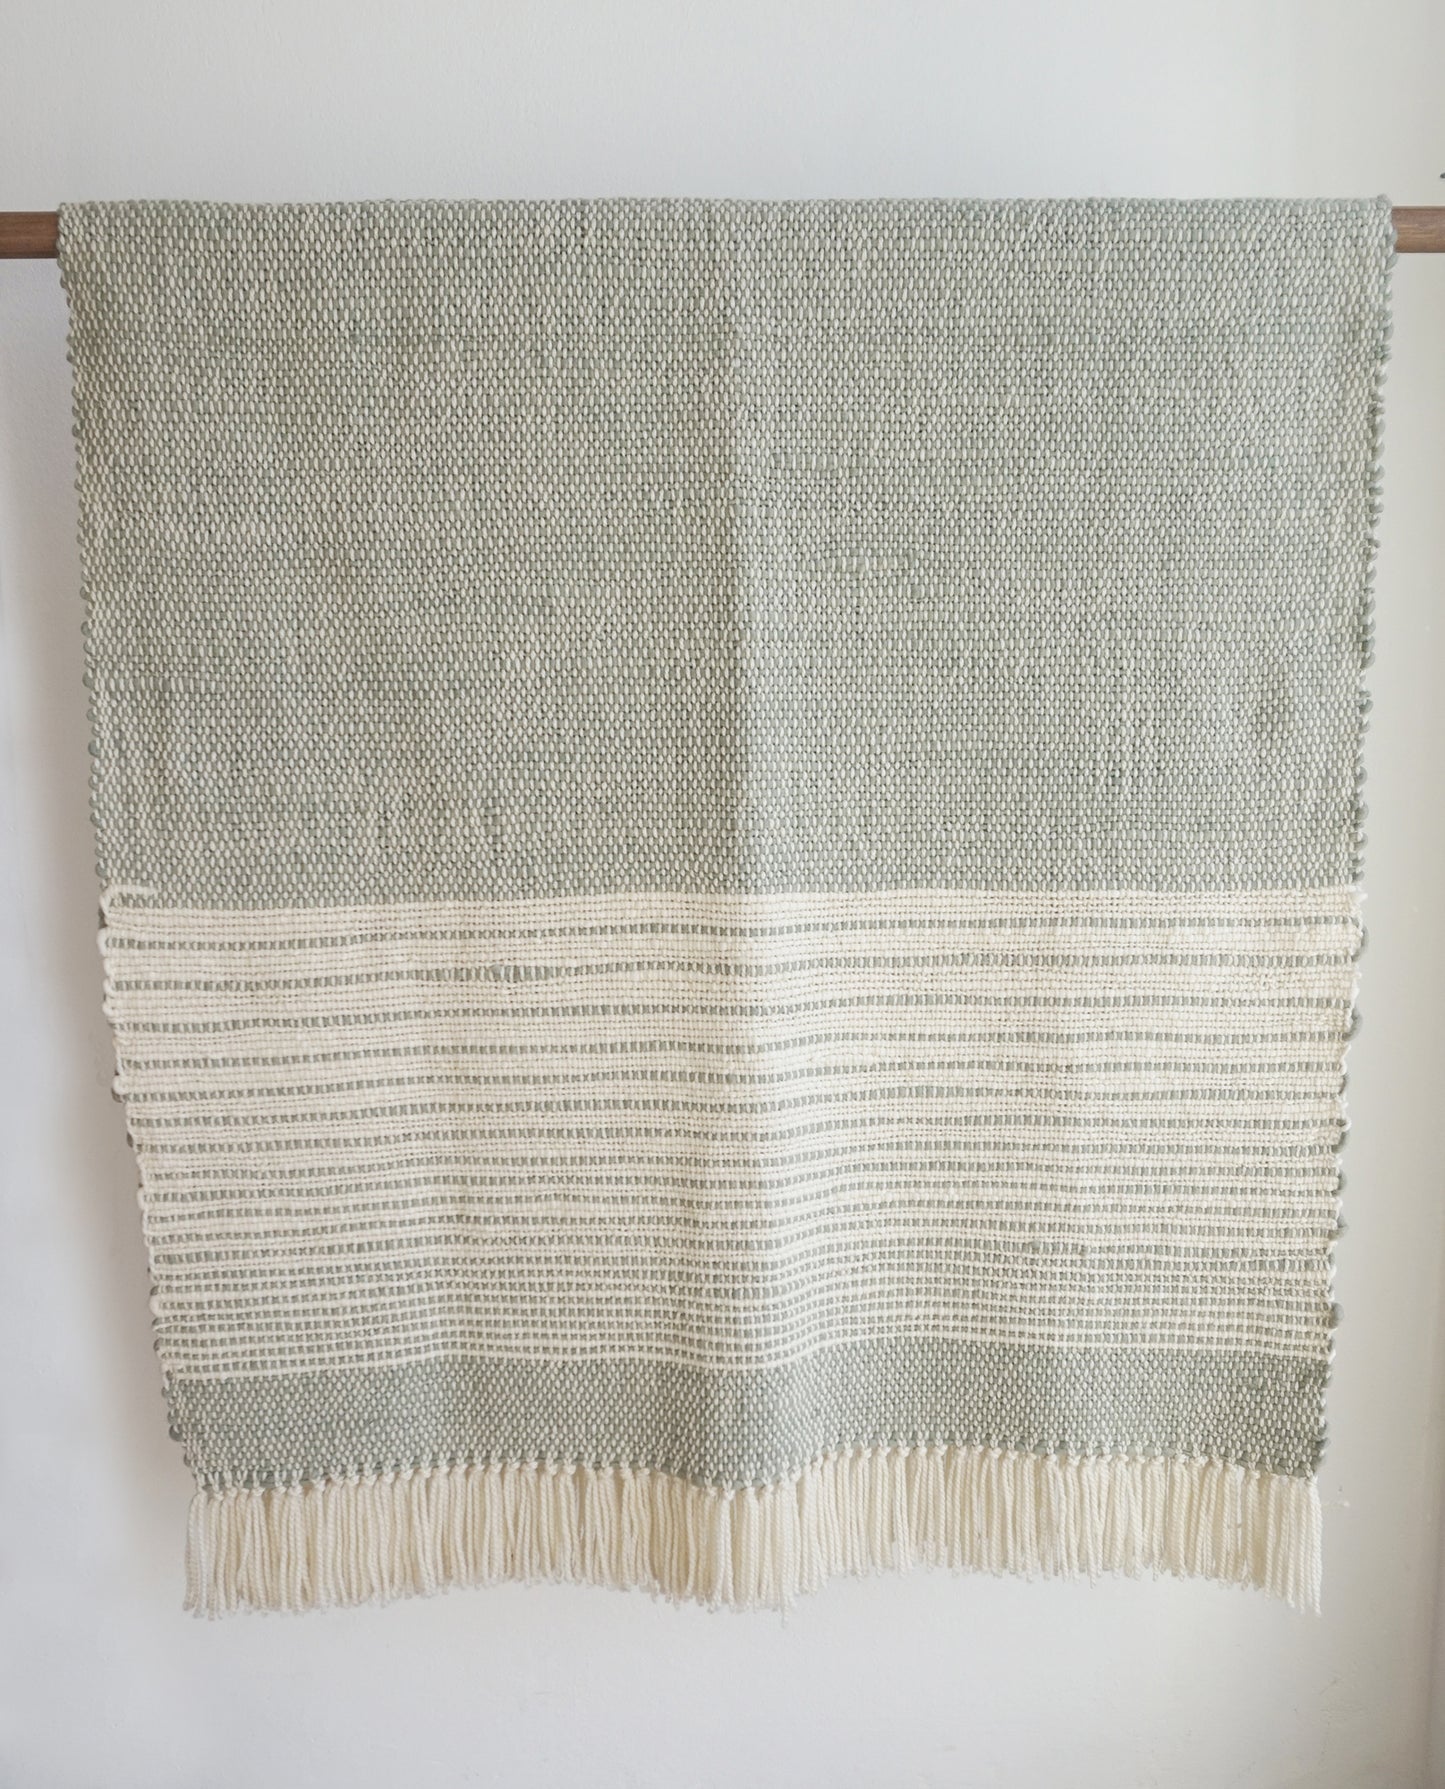 Wool Throw in Yerba Mate Sage Green Cimarron 37x75